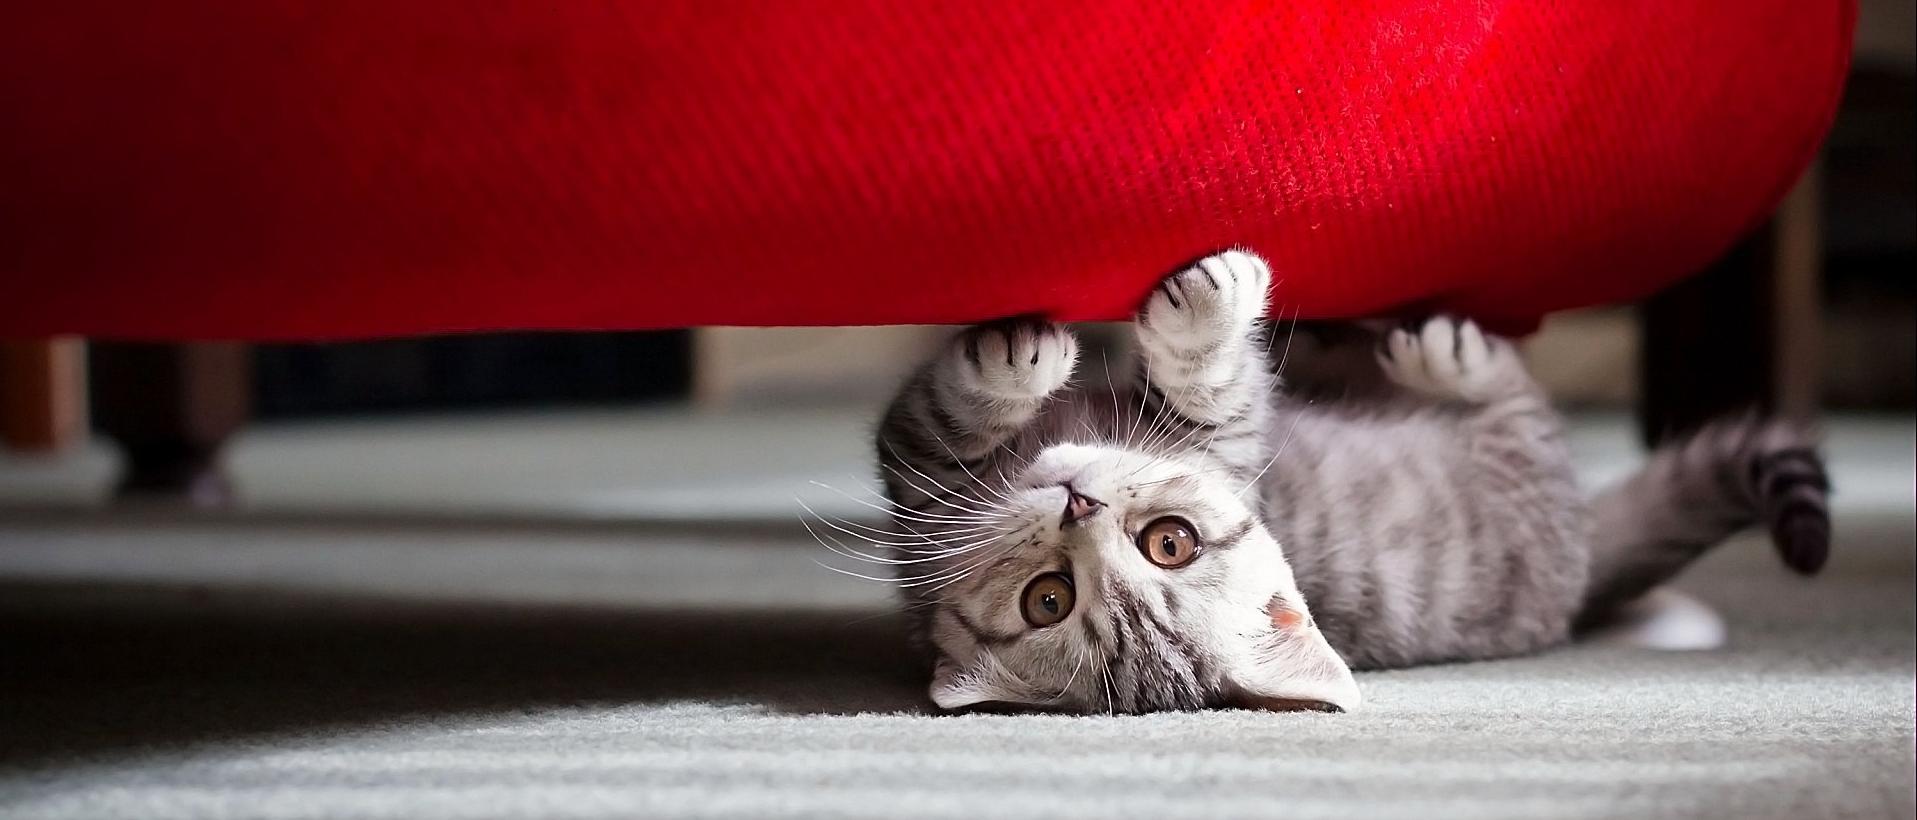 Как выбрать ткань для дивана, если у вас есть кошка?